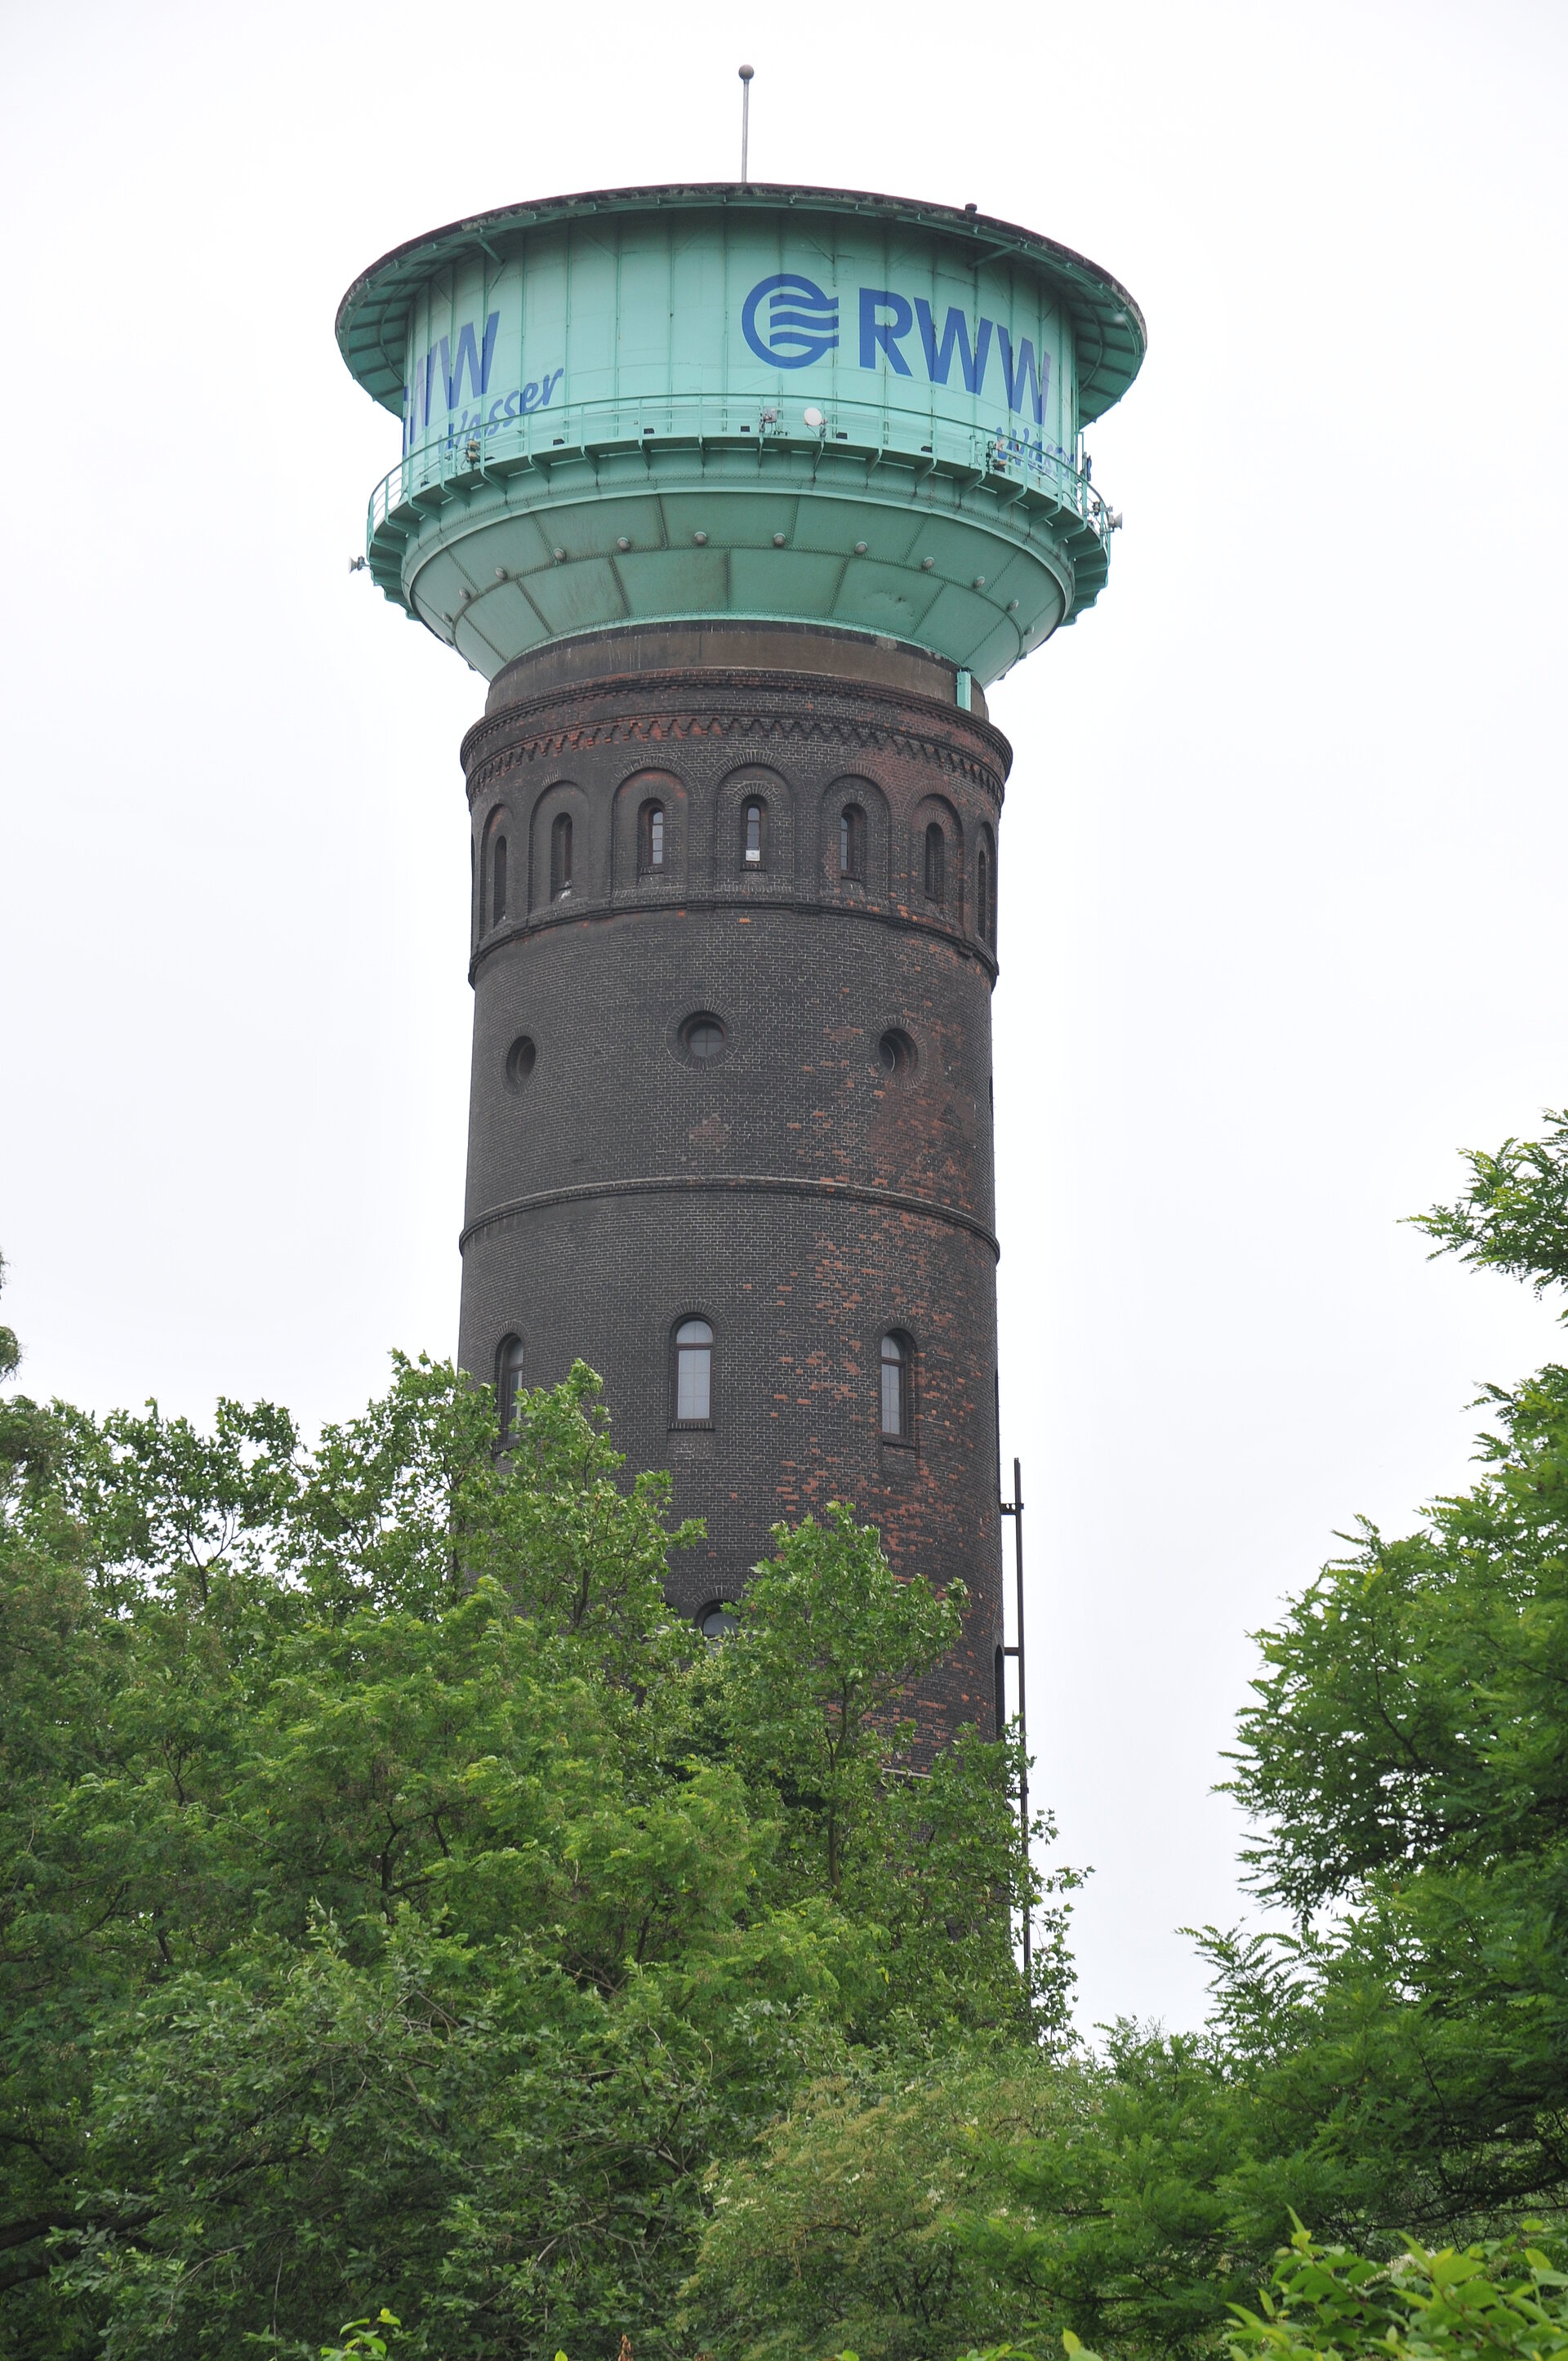 RWW-Wasserturm in Oberhausen.